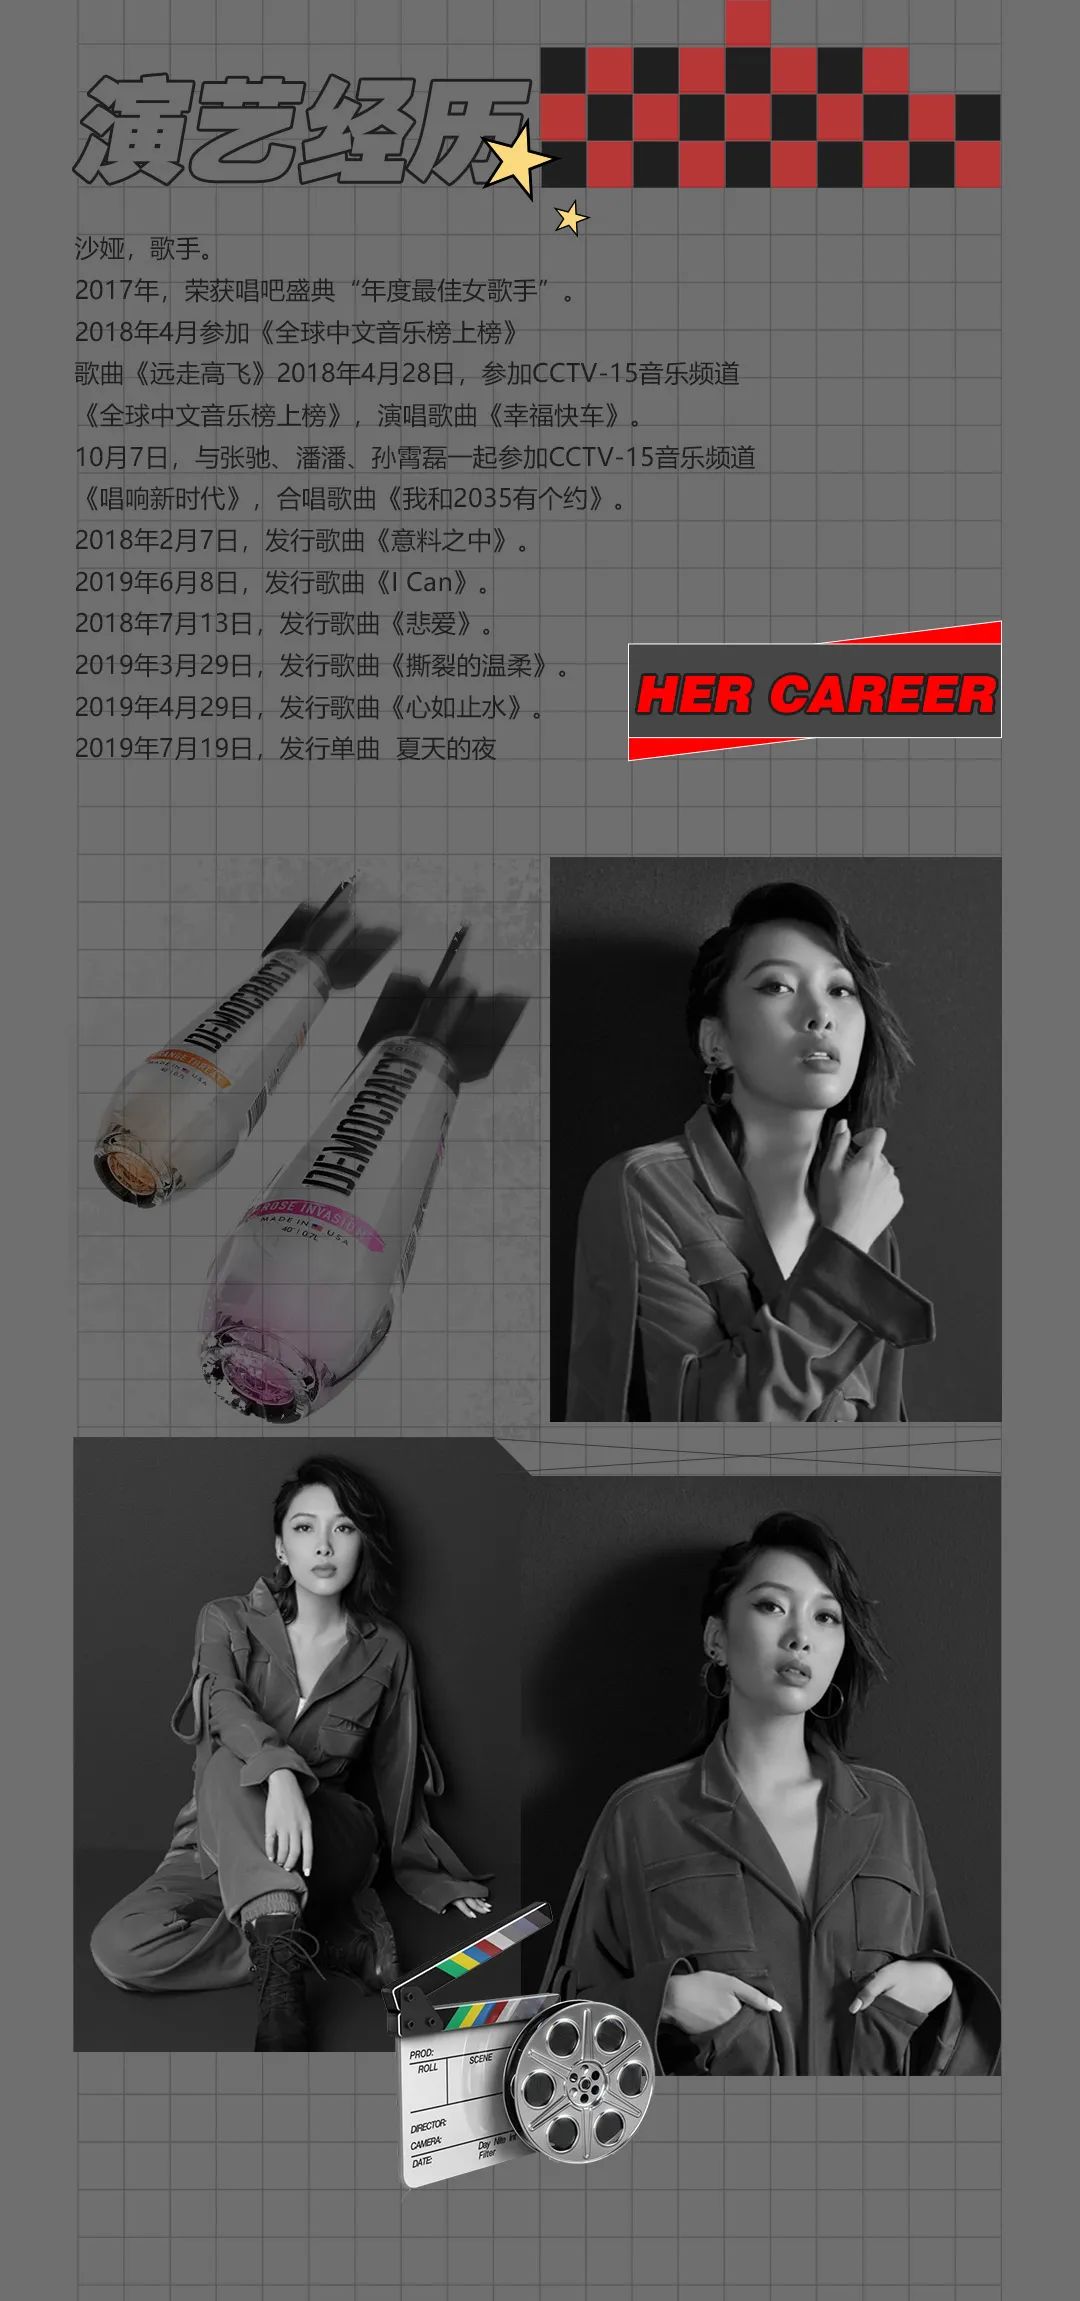 04.23 | 抖音人气网红歌手“沙娅” 开启浪漫聆听-深圳AC酒吧/ART CENTER